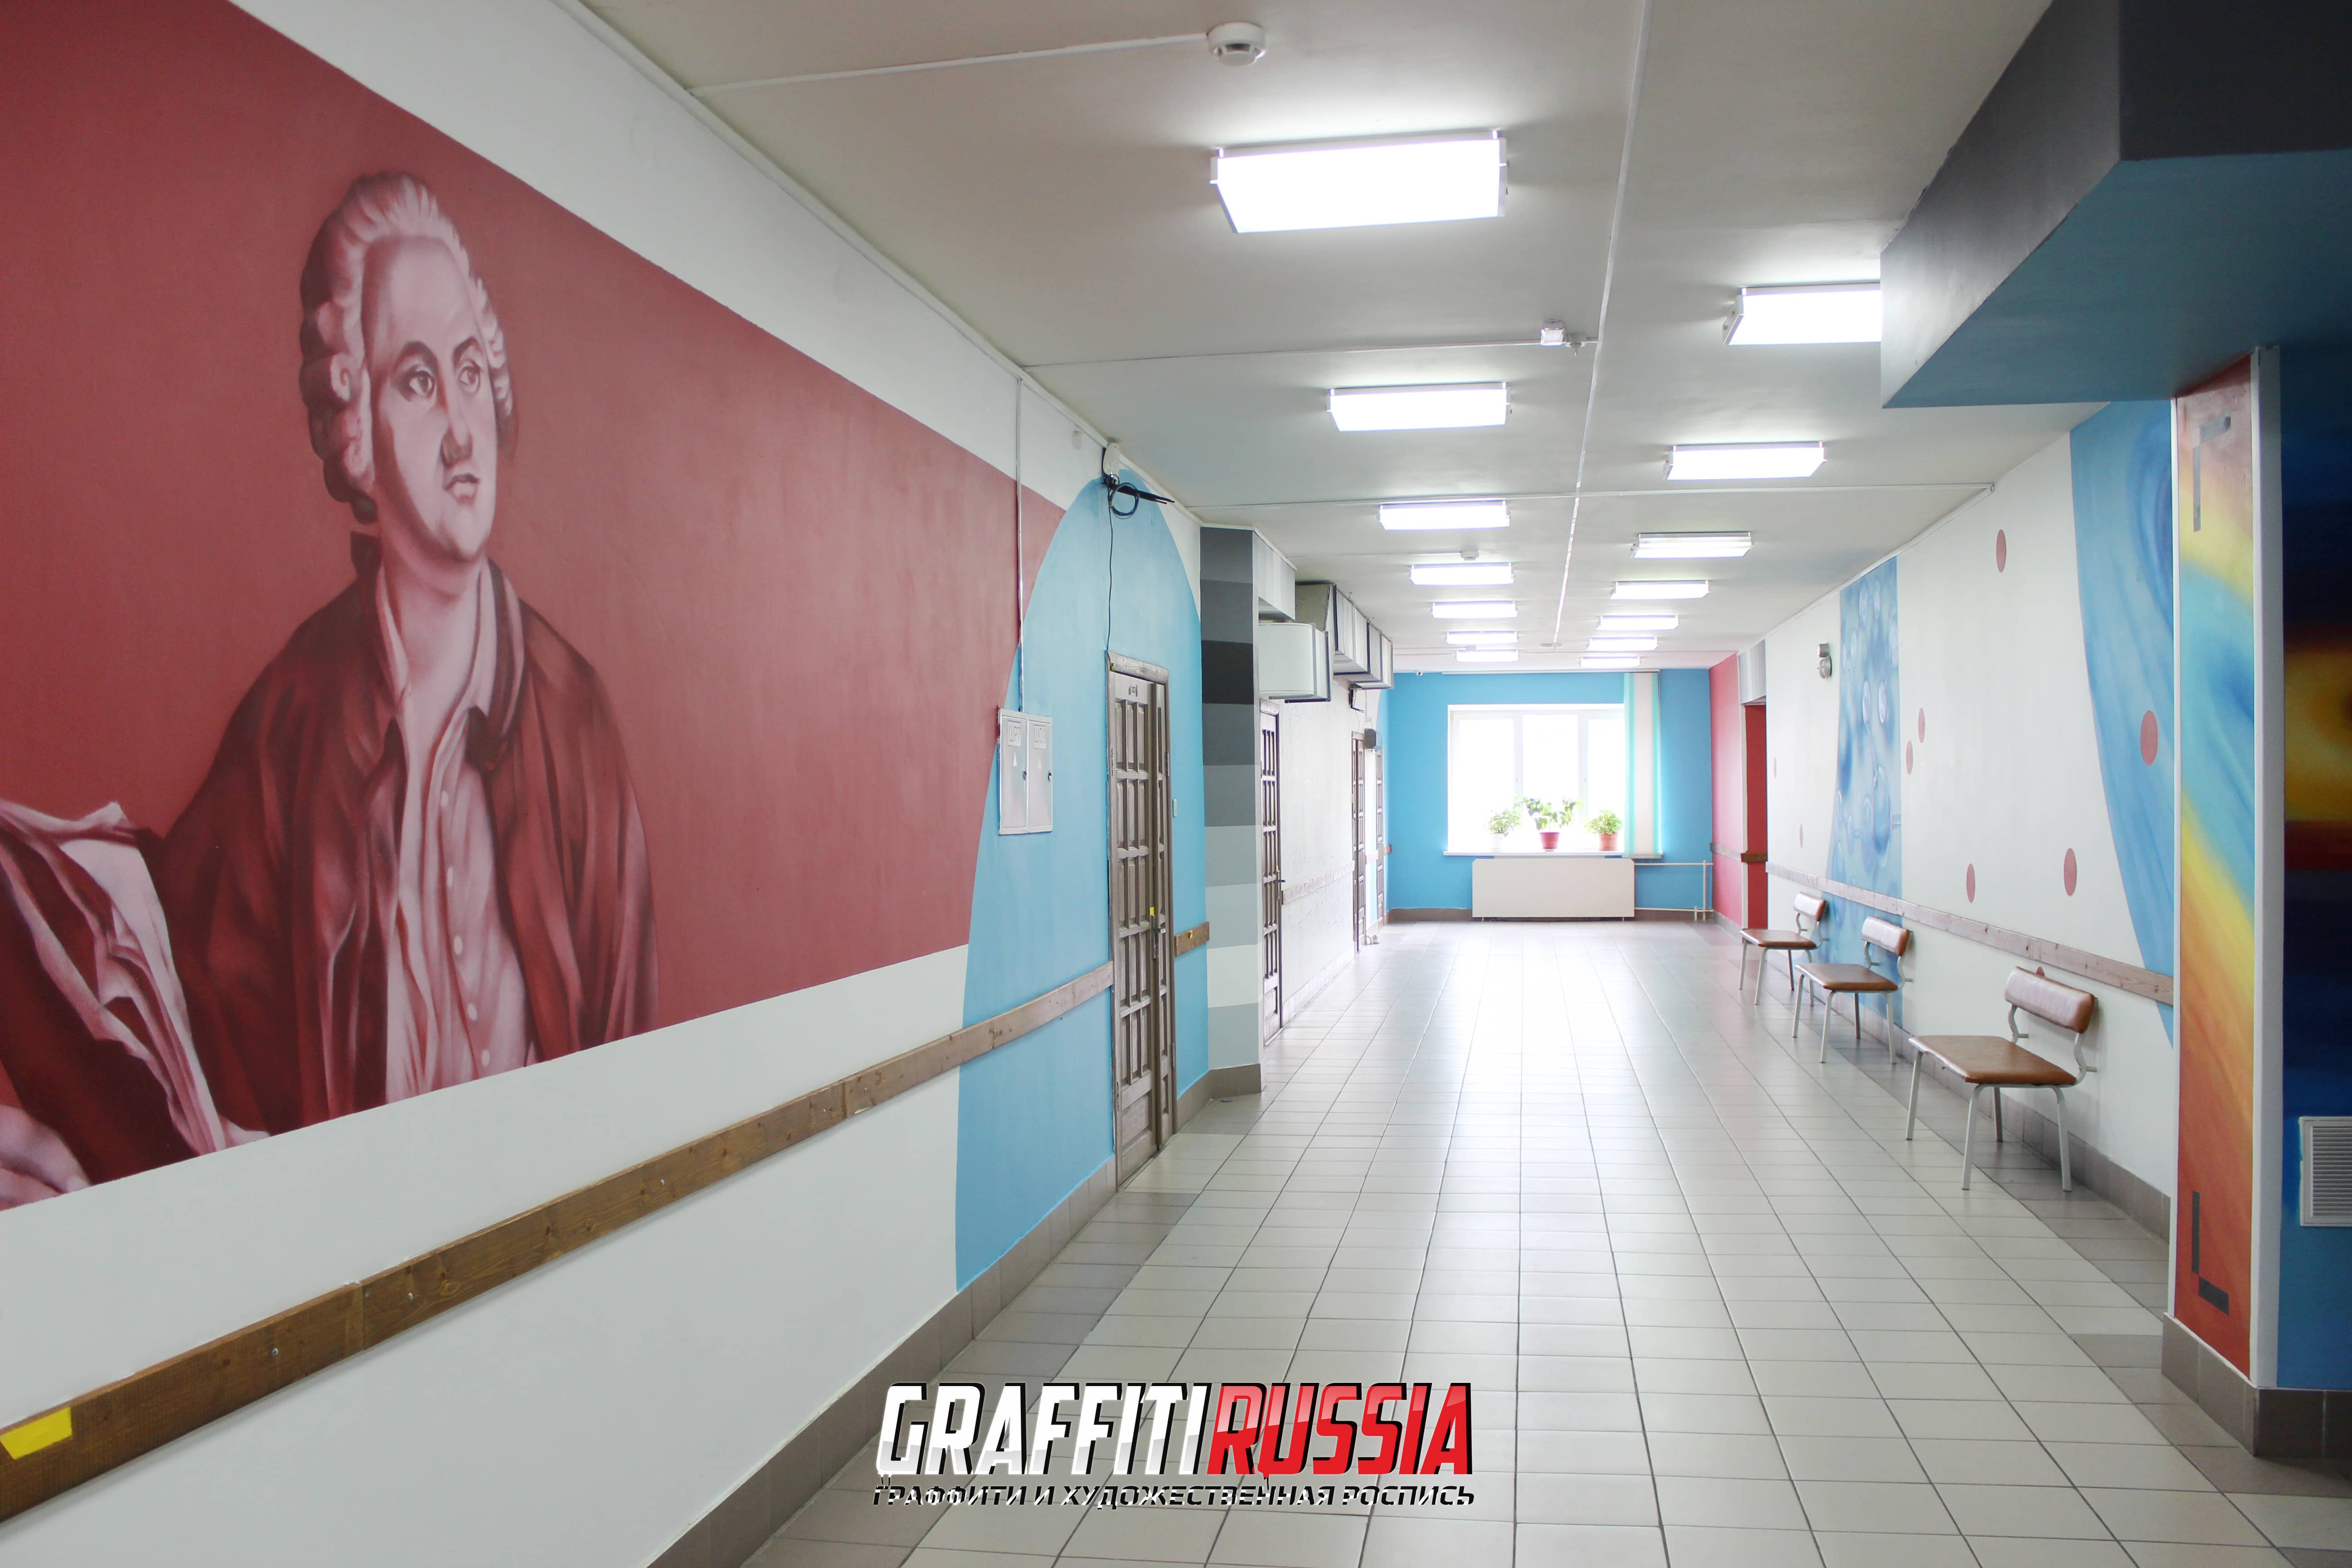 Творческие и интересные рисунки в оформлении стен 127 школы | Graffiti  Russia